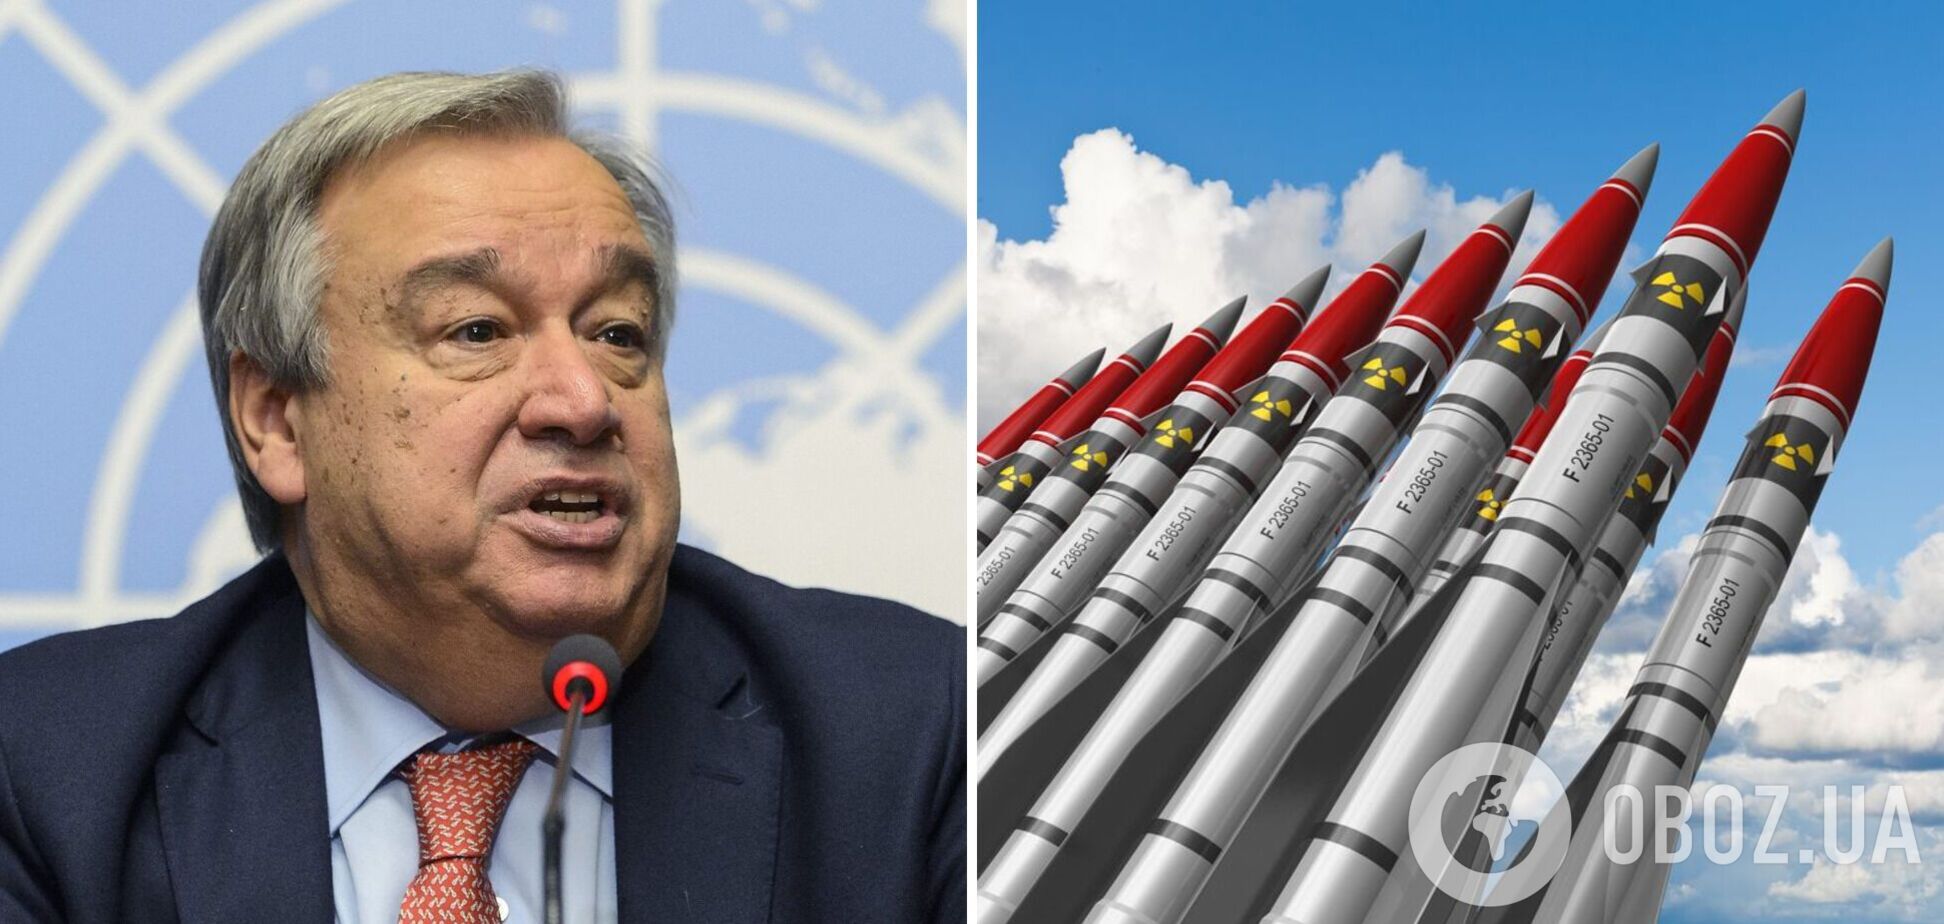 Генсек ООН закликав світ повністю знищити ядерну зброю: ризики досягли критичного рівня